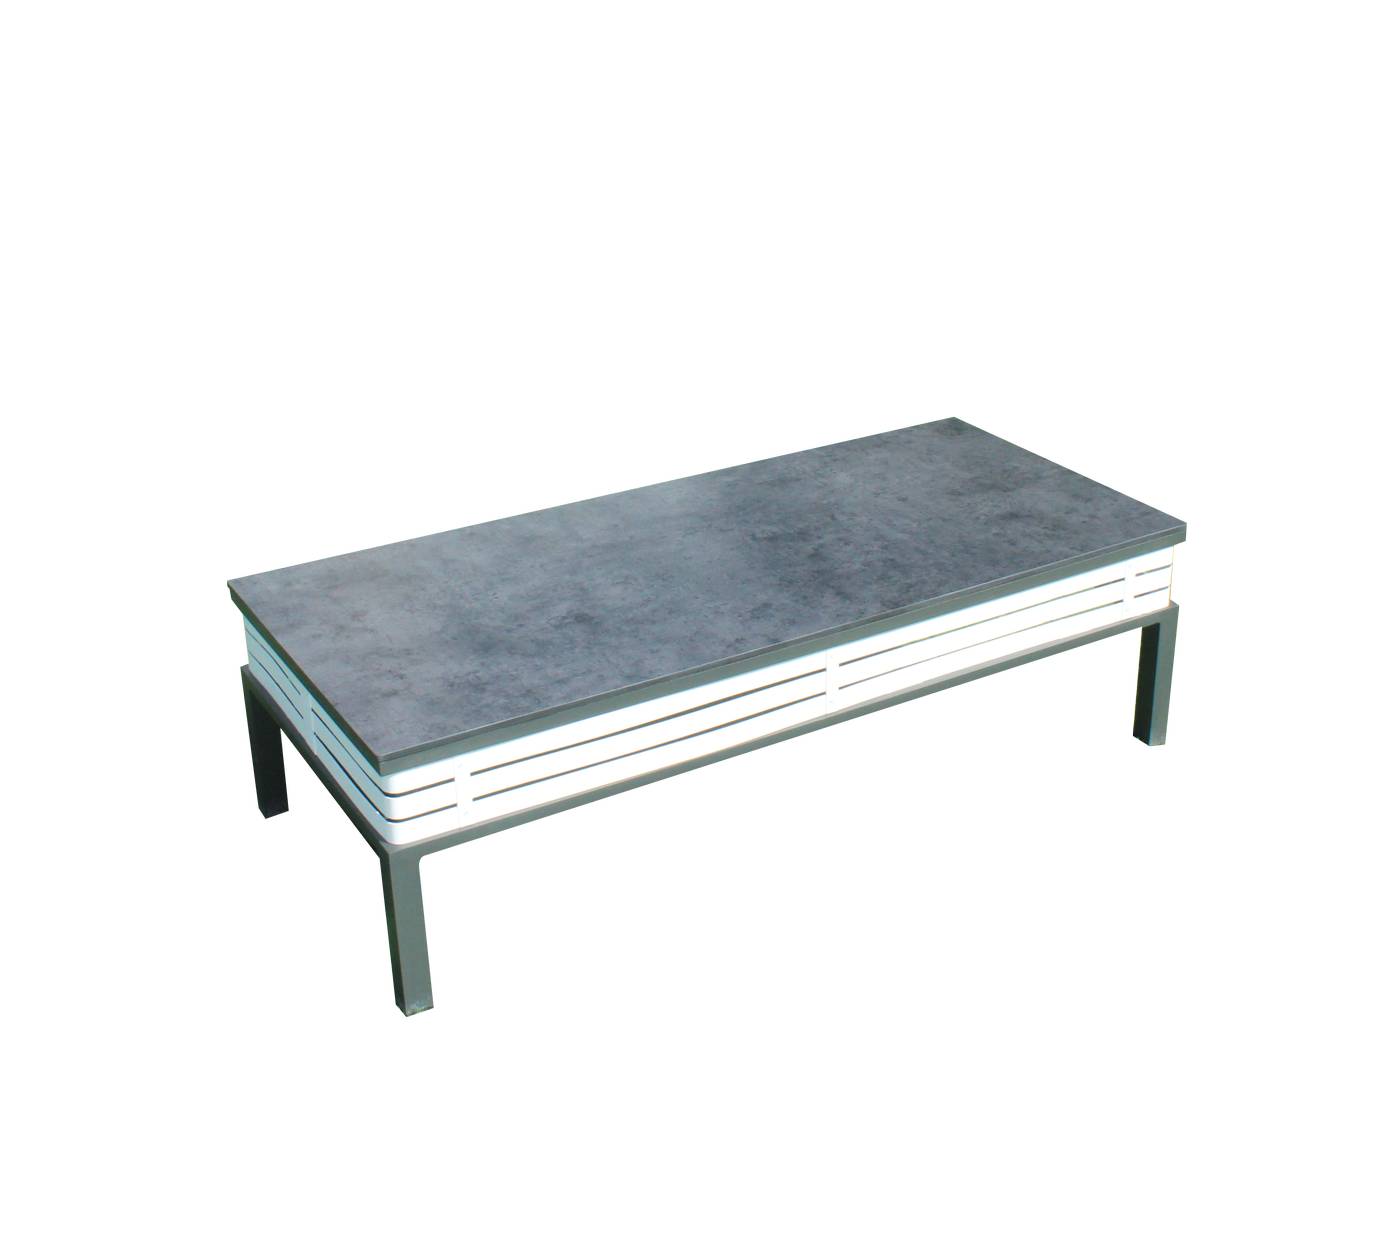 Set Aluminio Sira-9 - Coqueto conjunto de alumnio bicolor: 1 sofá de 2 plazas + 2 sillones + 2 reposapiés + 1 mesa de centro.